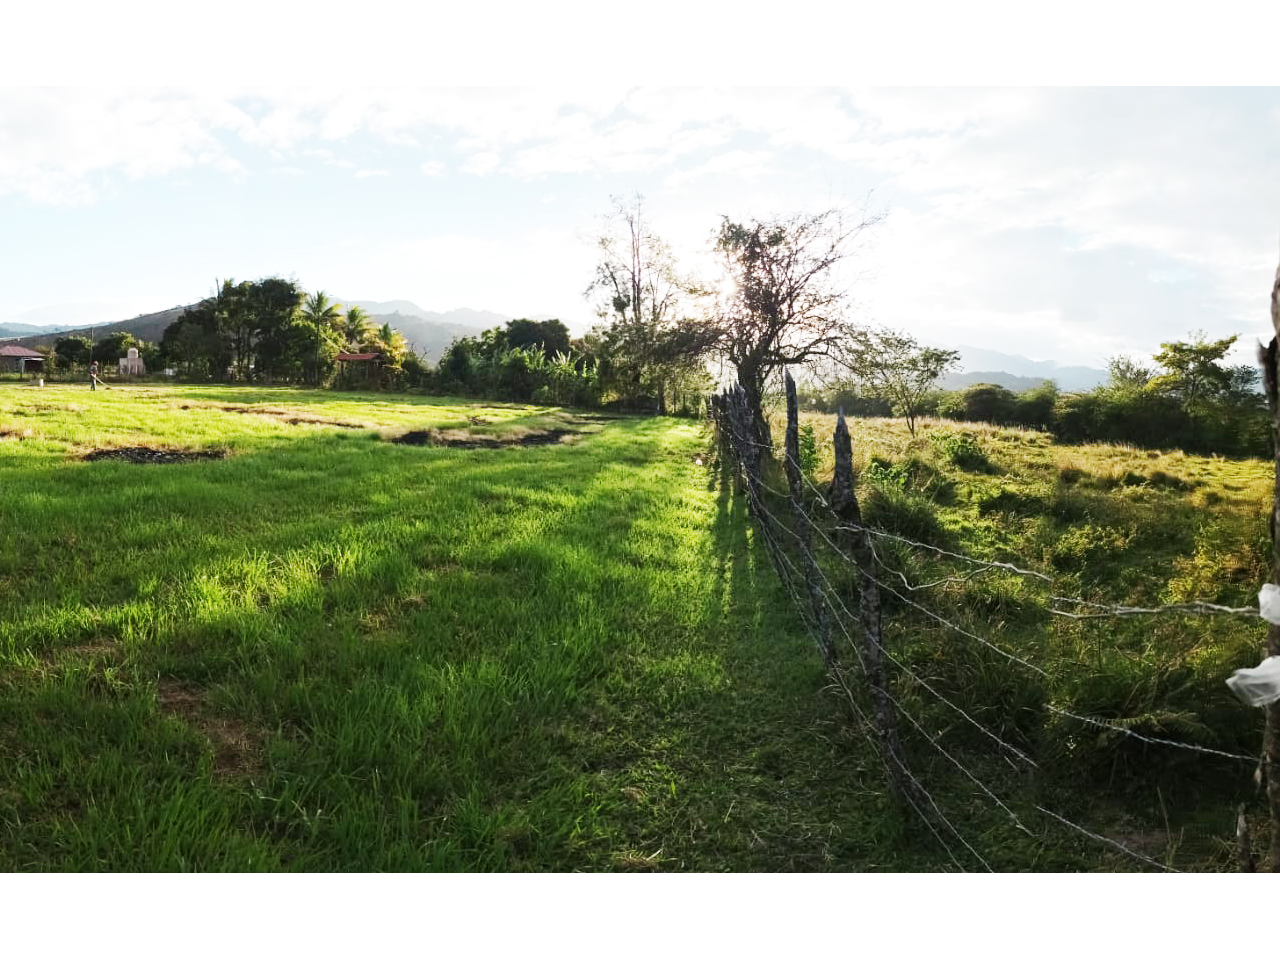 Terreno amplio en la ciudad del Zamorano con cerco perimetral con grama verde, árboles al fondo y vista al cerro.